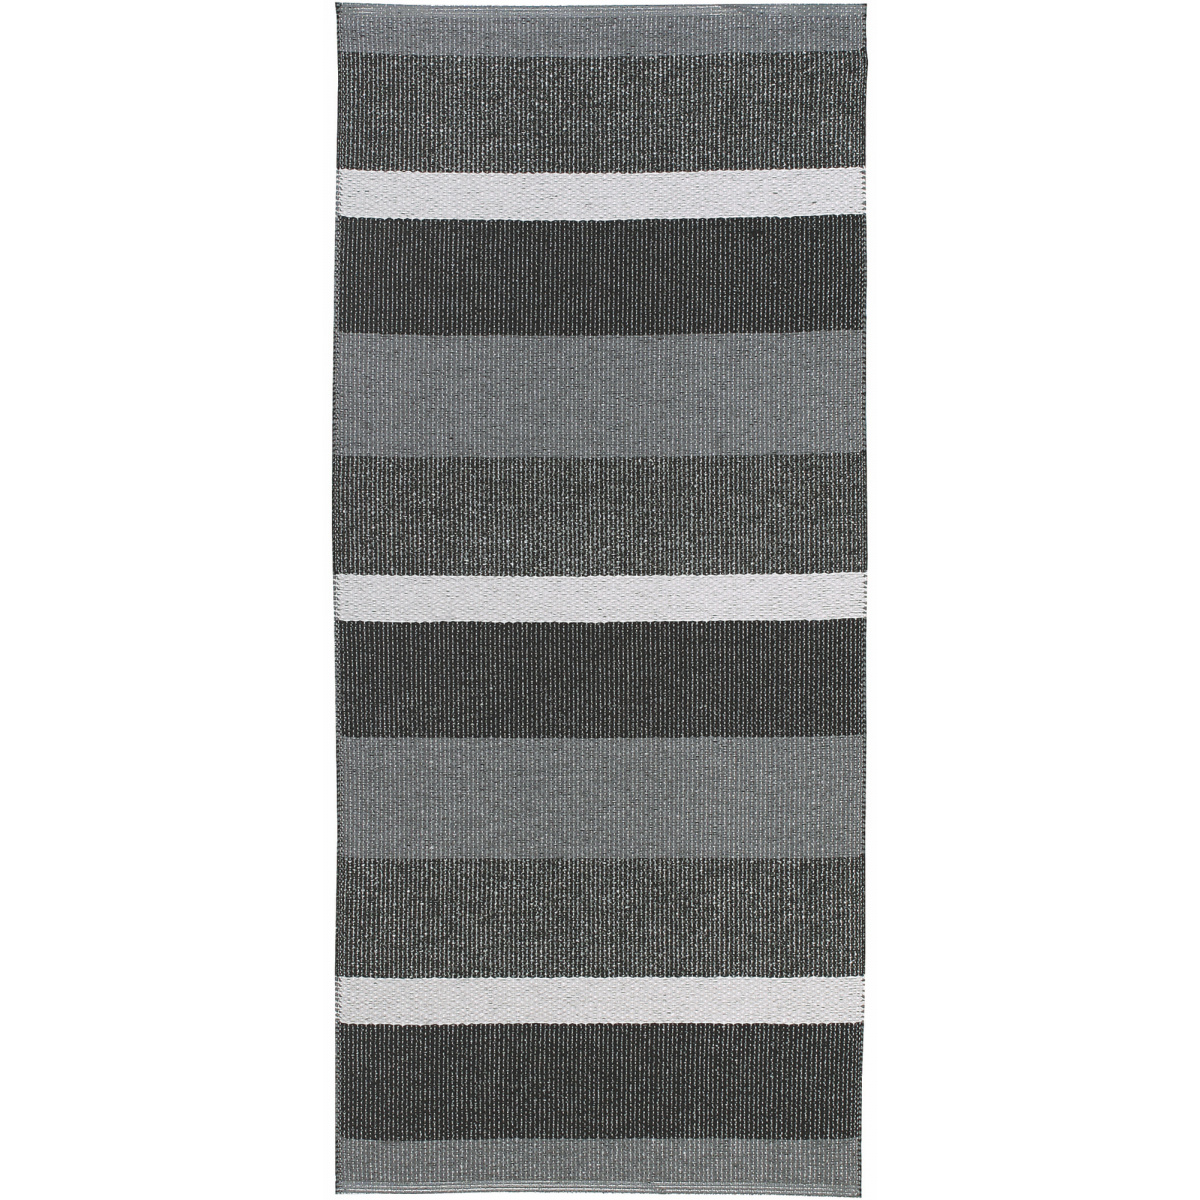 Horredsmattan Outdoor-Teppich - Block graphit, 70x200